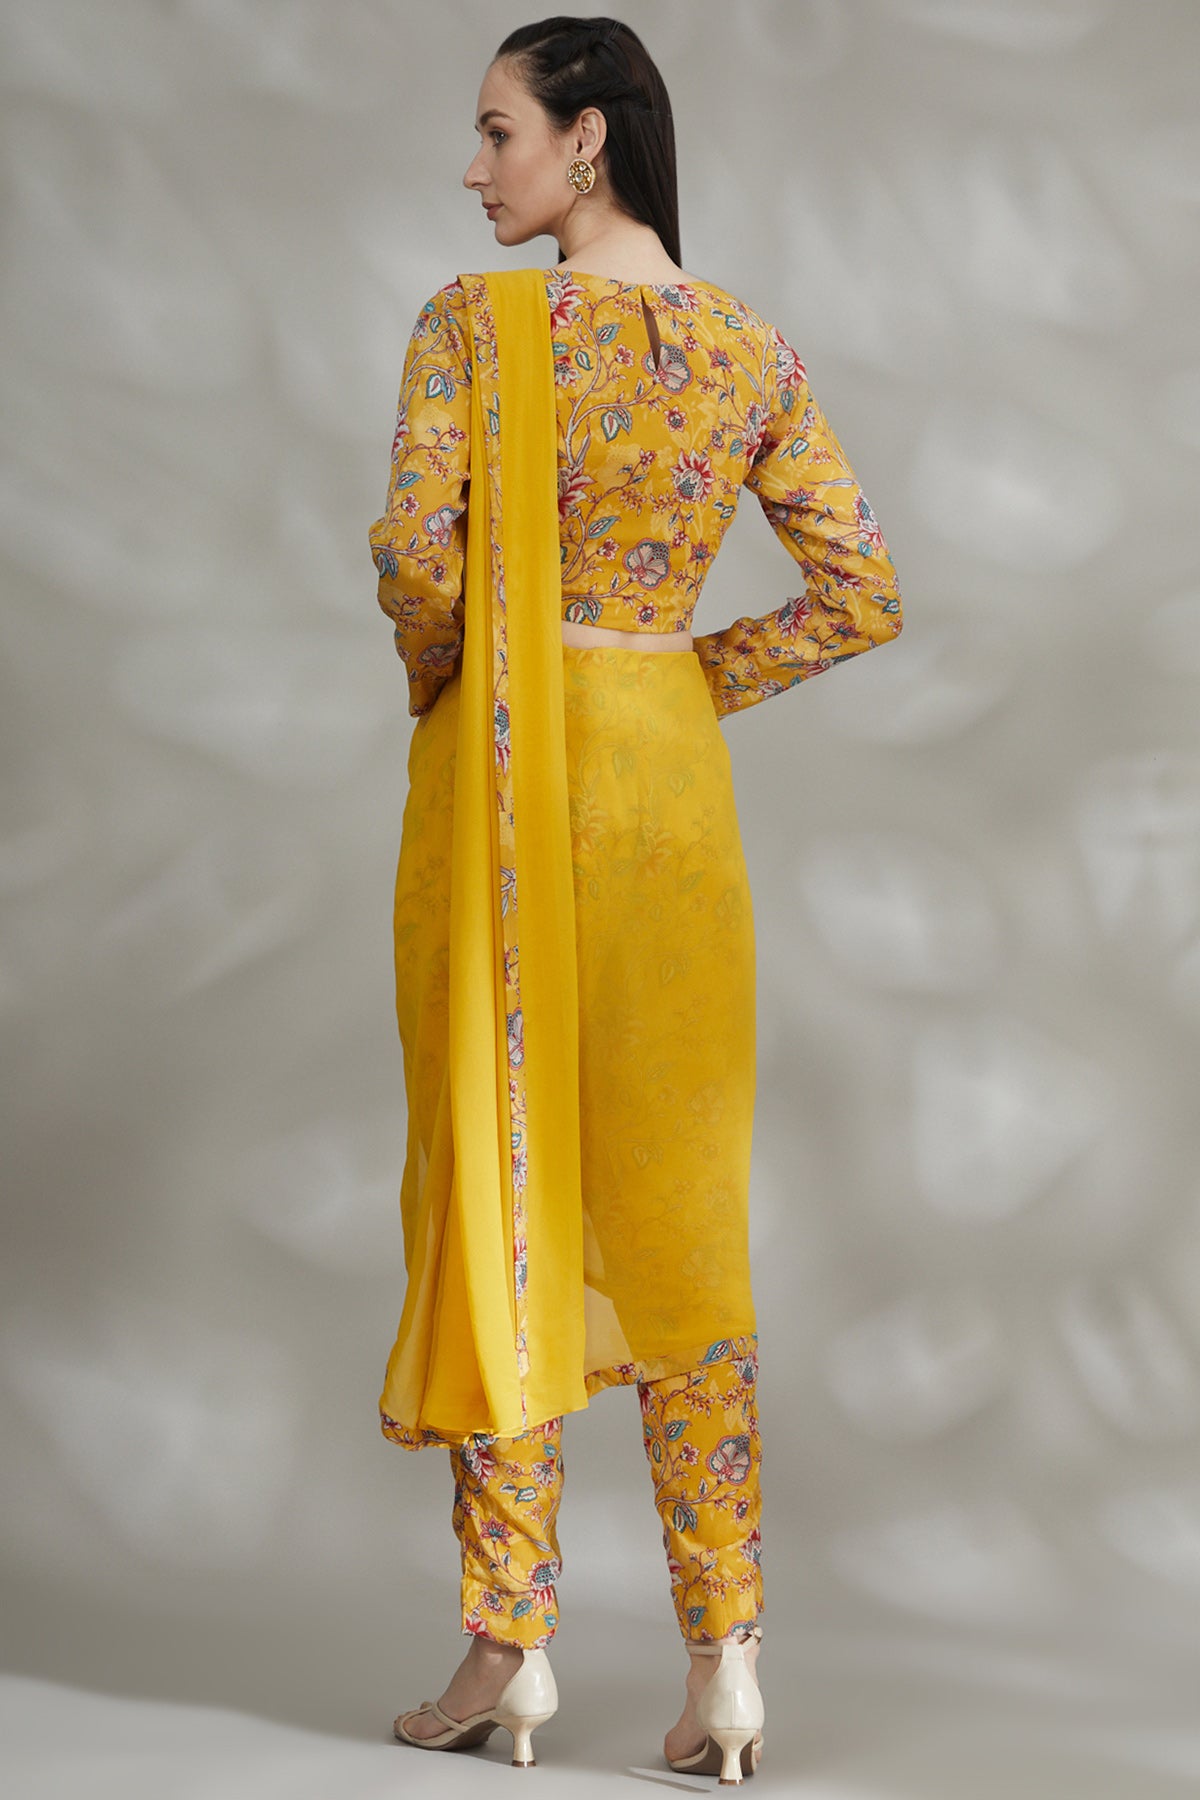 Buy Marwadi Women's maroon designer bridal palazo sarara pant saree with un  stitched blouse. at Amazon.in